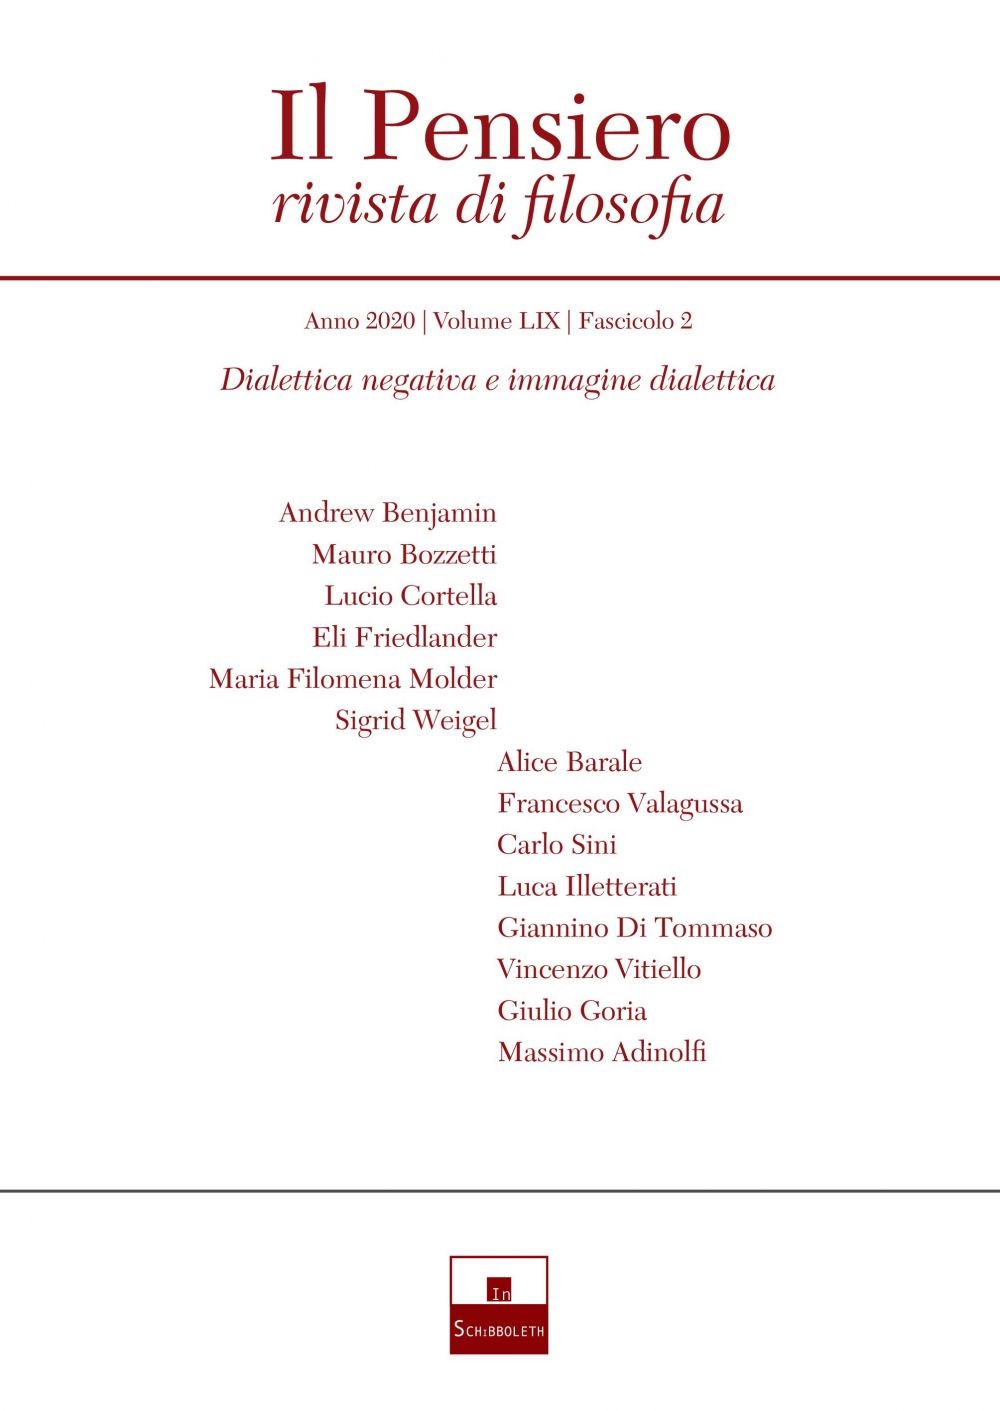 Dialettica negativa e immagine dialettica (2020-2) - Librerie.coop